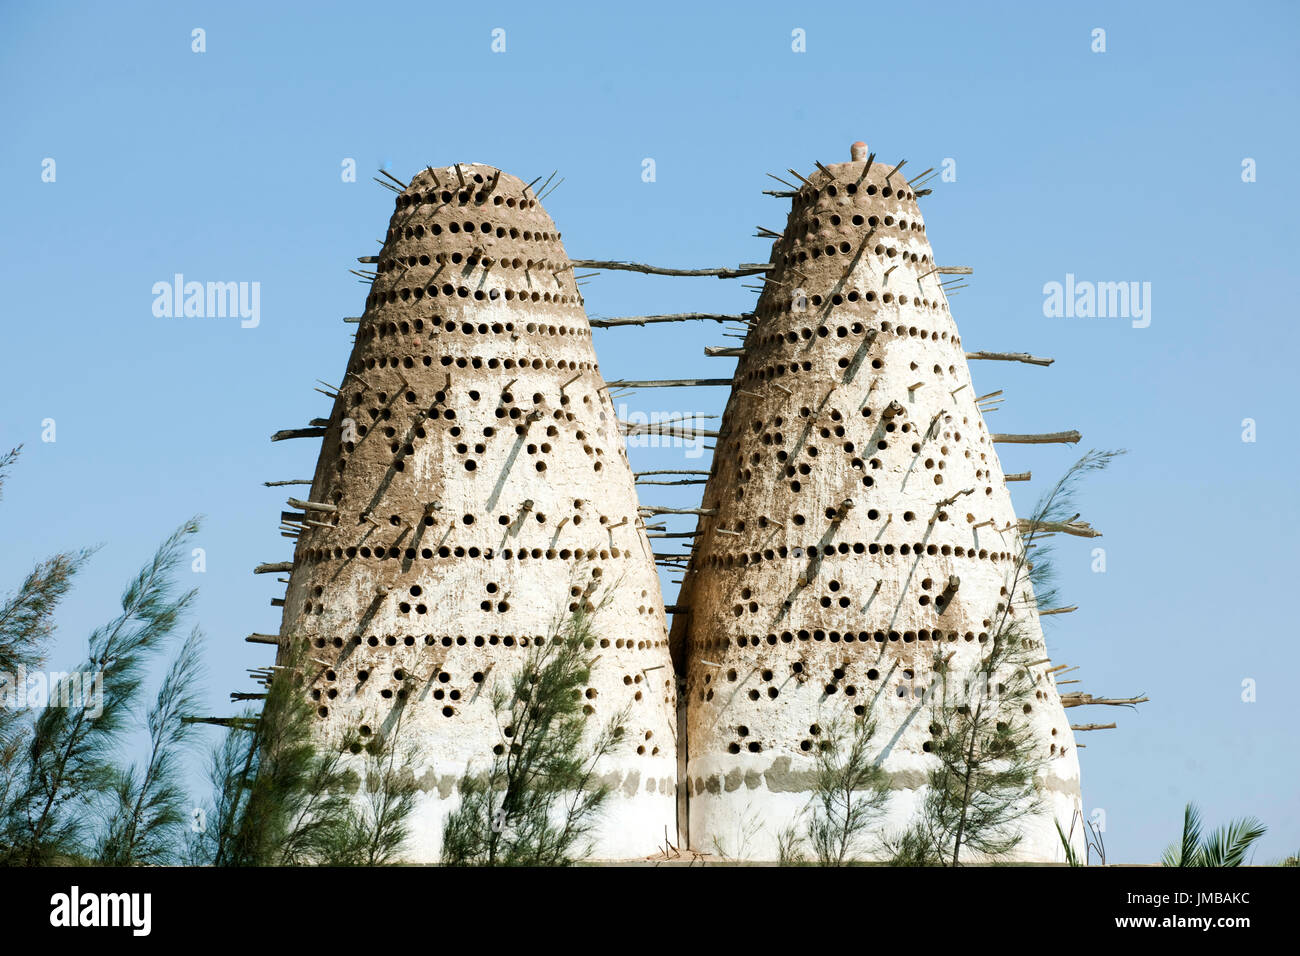 Aegypten, An der Wüstenautobahn Alexandria - Kairo, Taubenhaus paloma (torre) Foto de stock